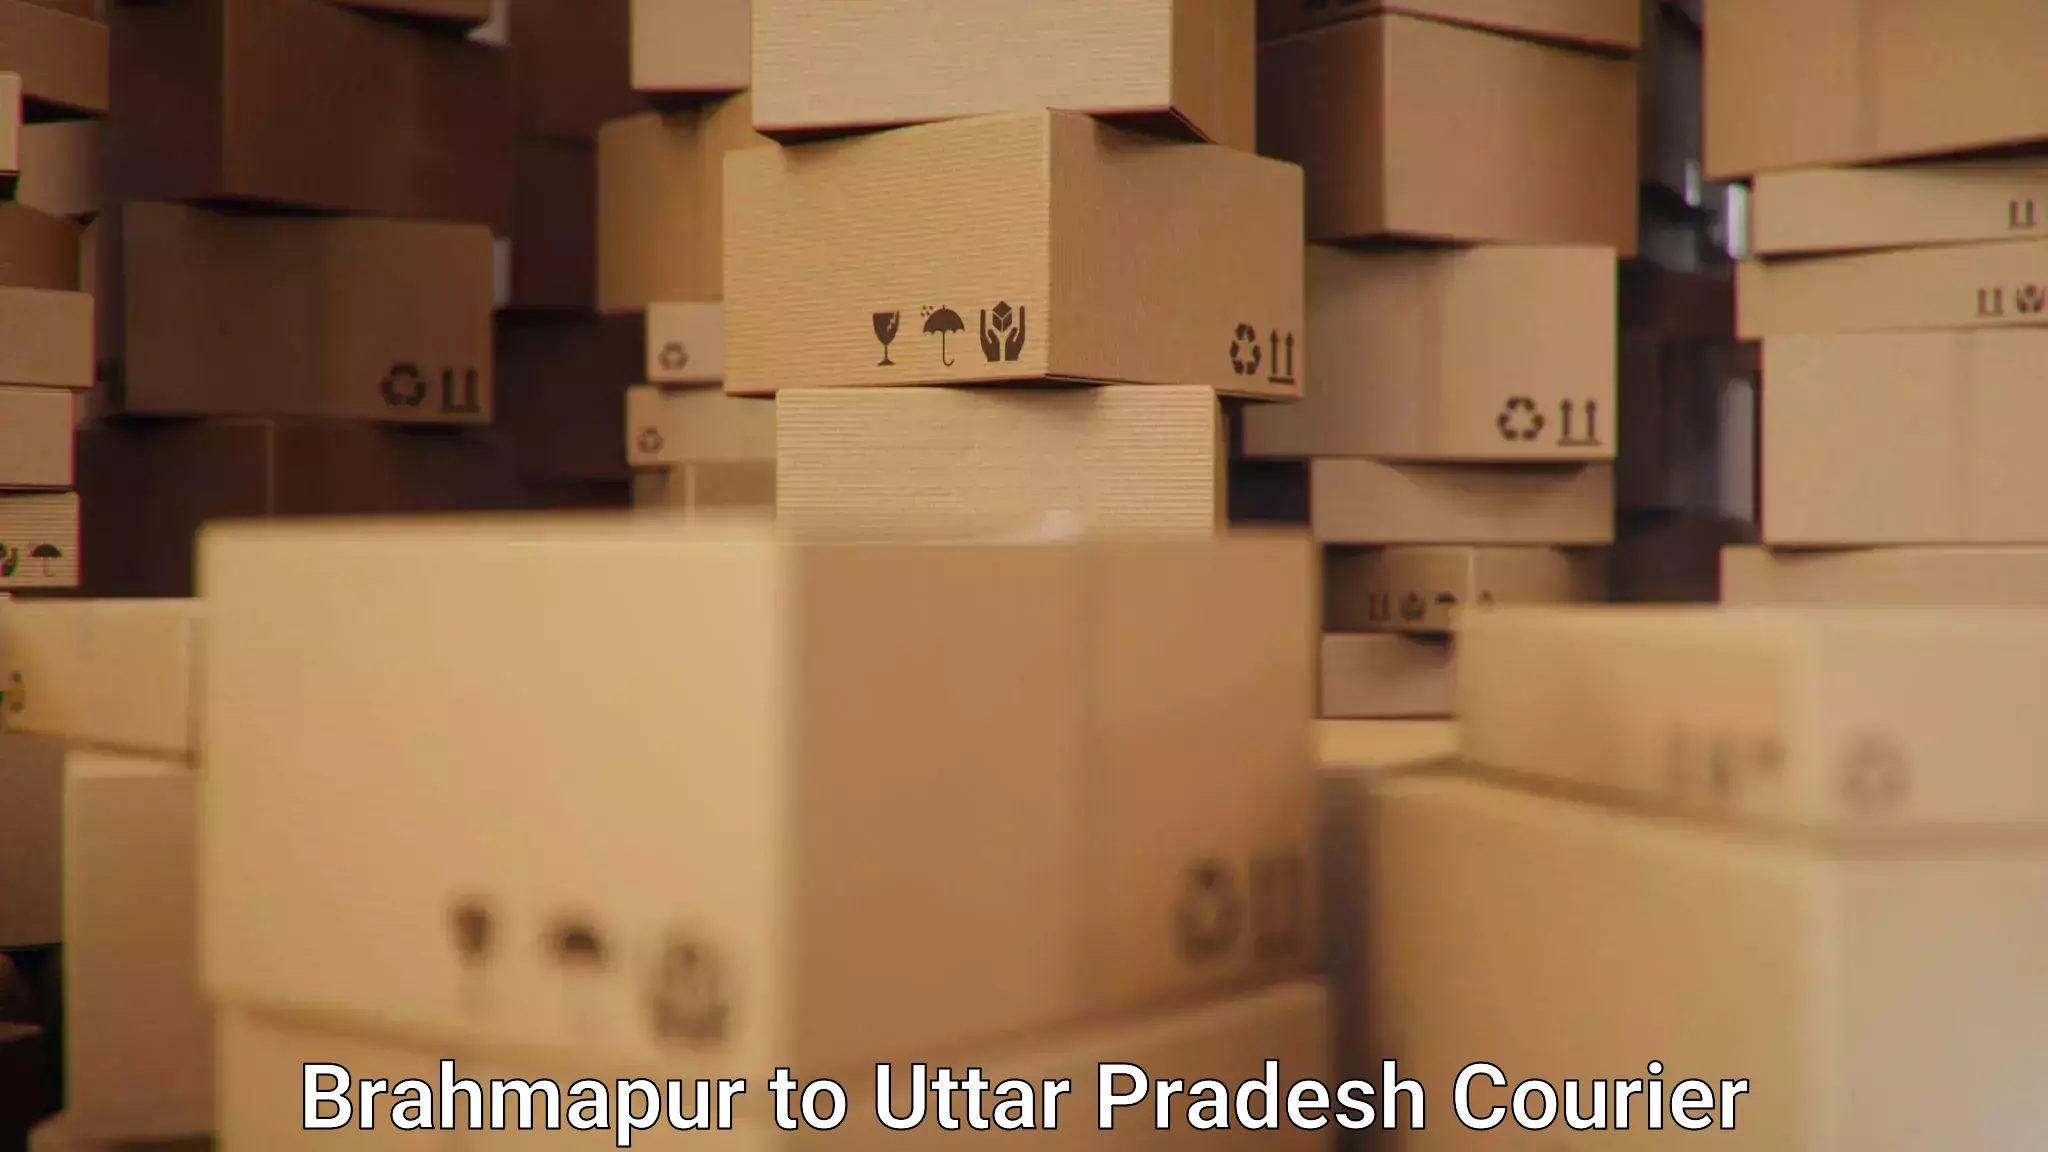 Tracking updates Brahmapur to Aligarh Muslim University